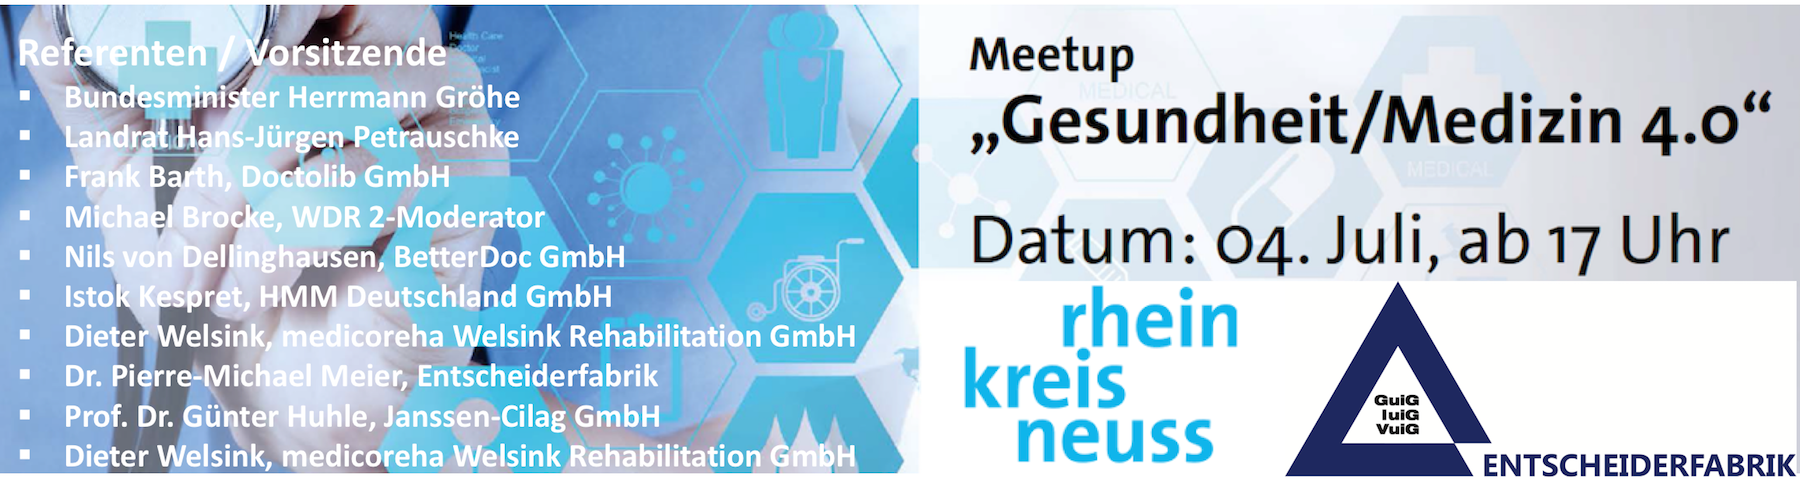 Meetup Gesundheit / Medizin 4.0 am 07.04.2017 um 17:00 mit Bundesgesundheitsminister Herrmann Größe